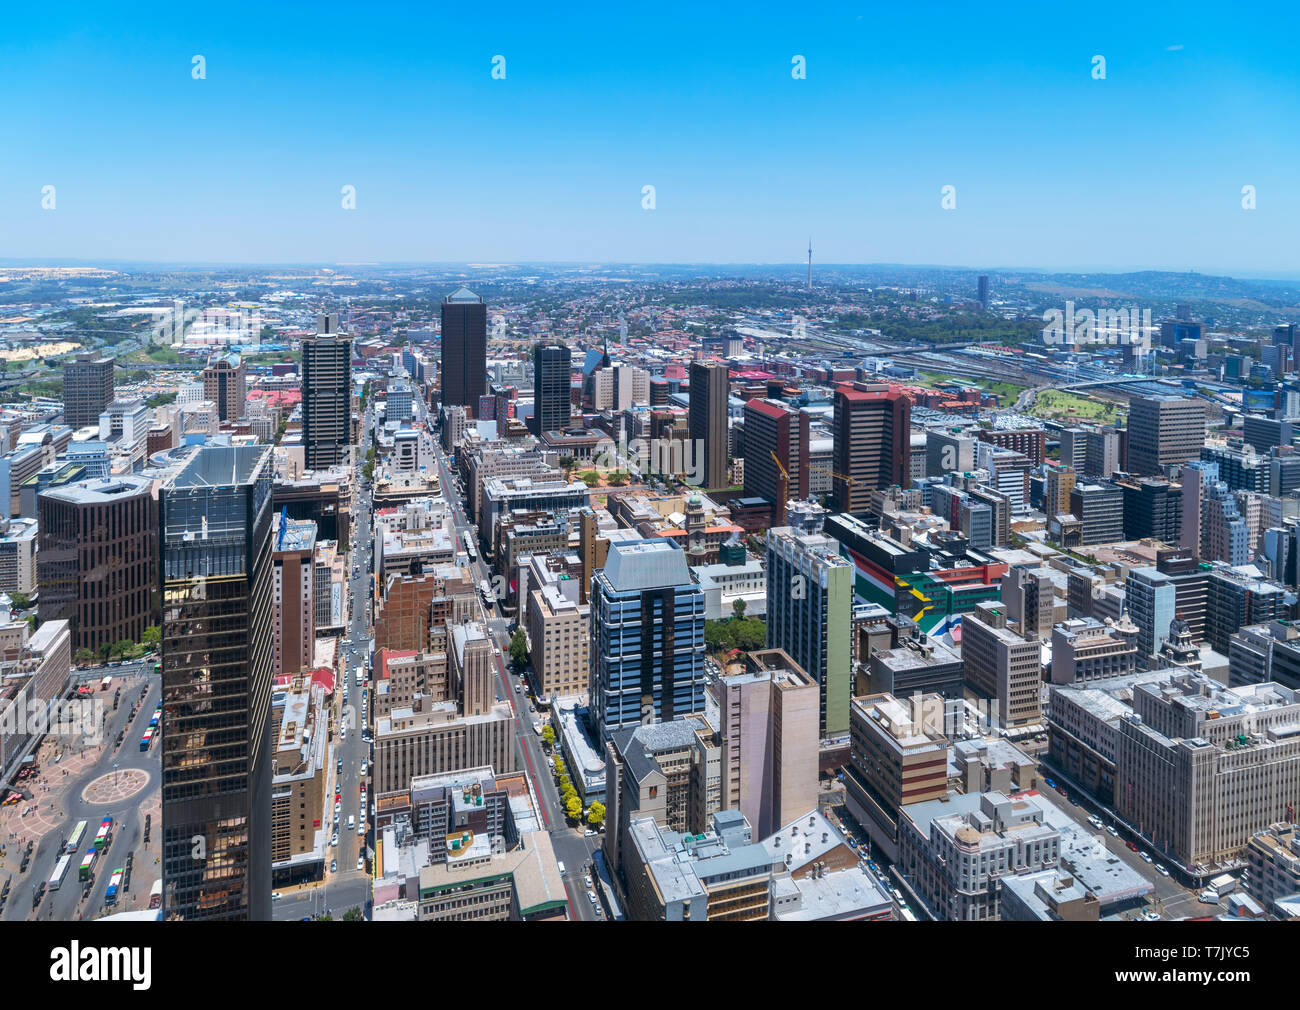 Horizon de Johannesburg. Vue aérienne sur le quartier central des affaires (CBD) depuis la Tour Carlton, Johannesburg, Afrique du Sud. Banque D'Images